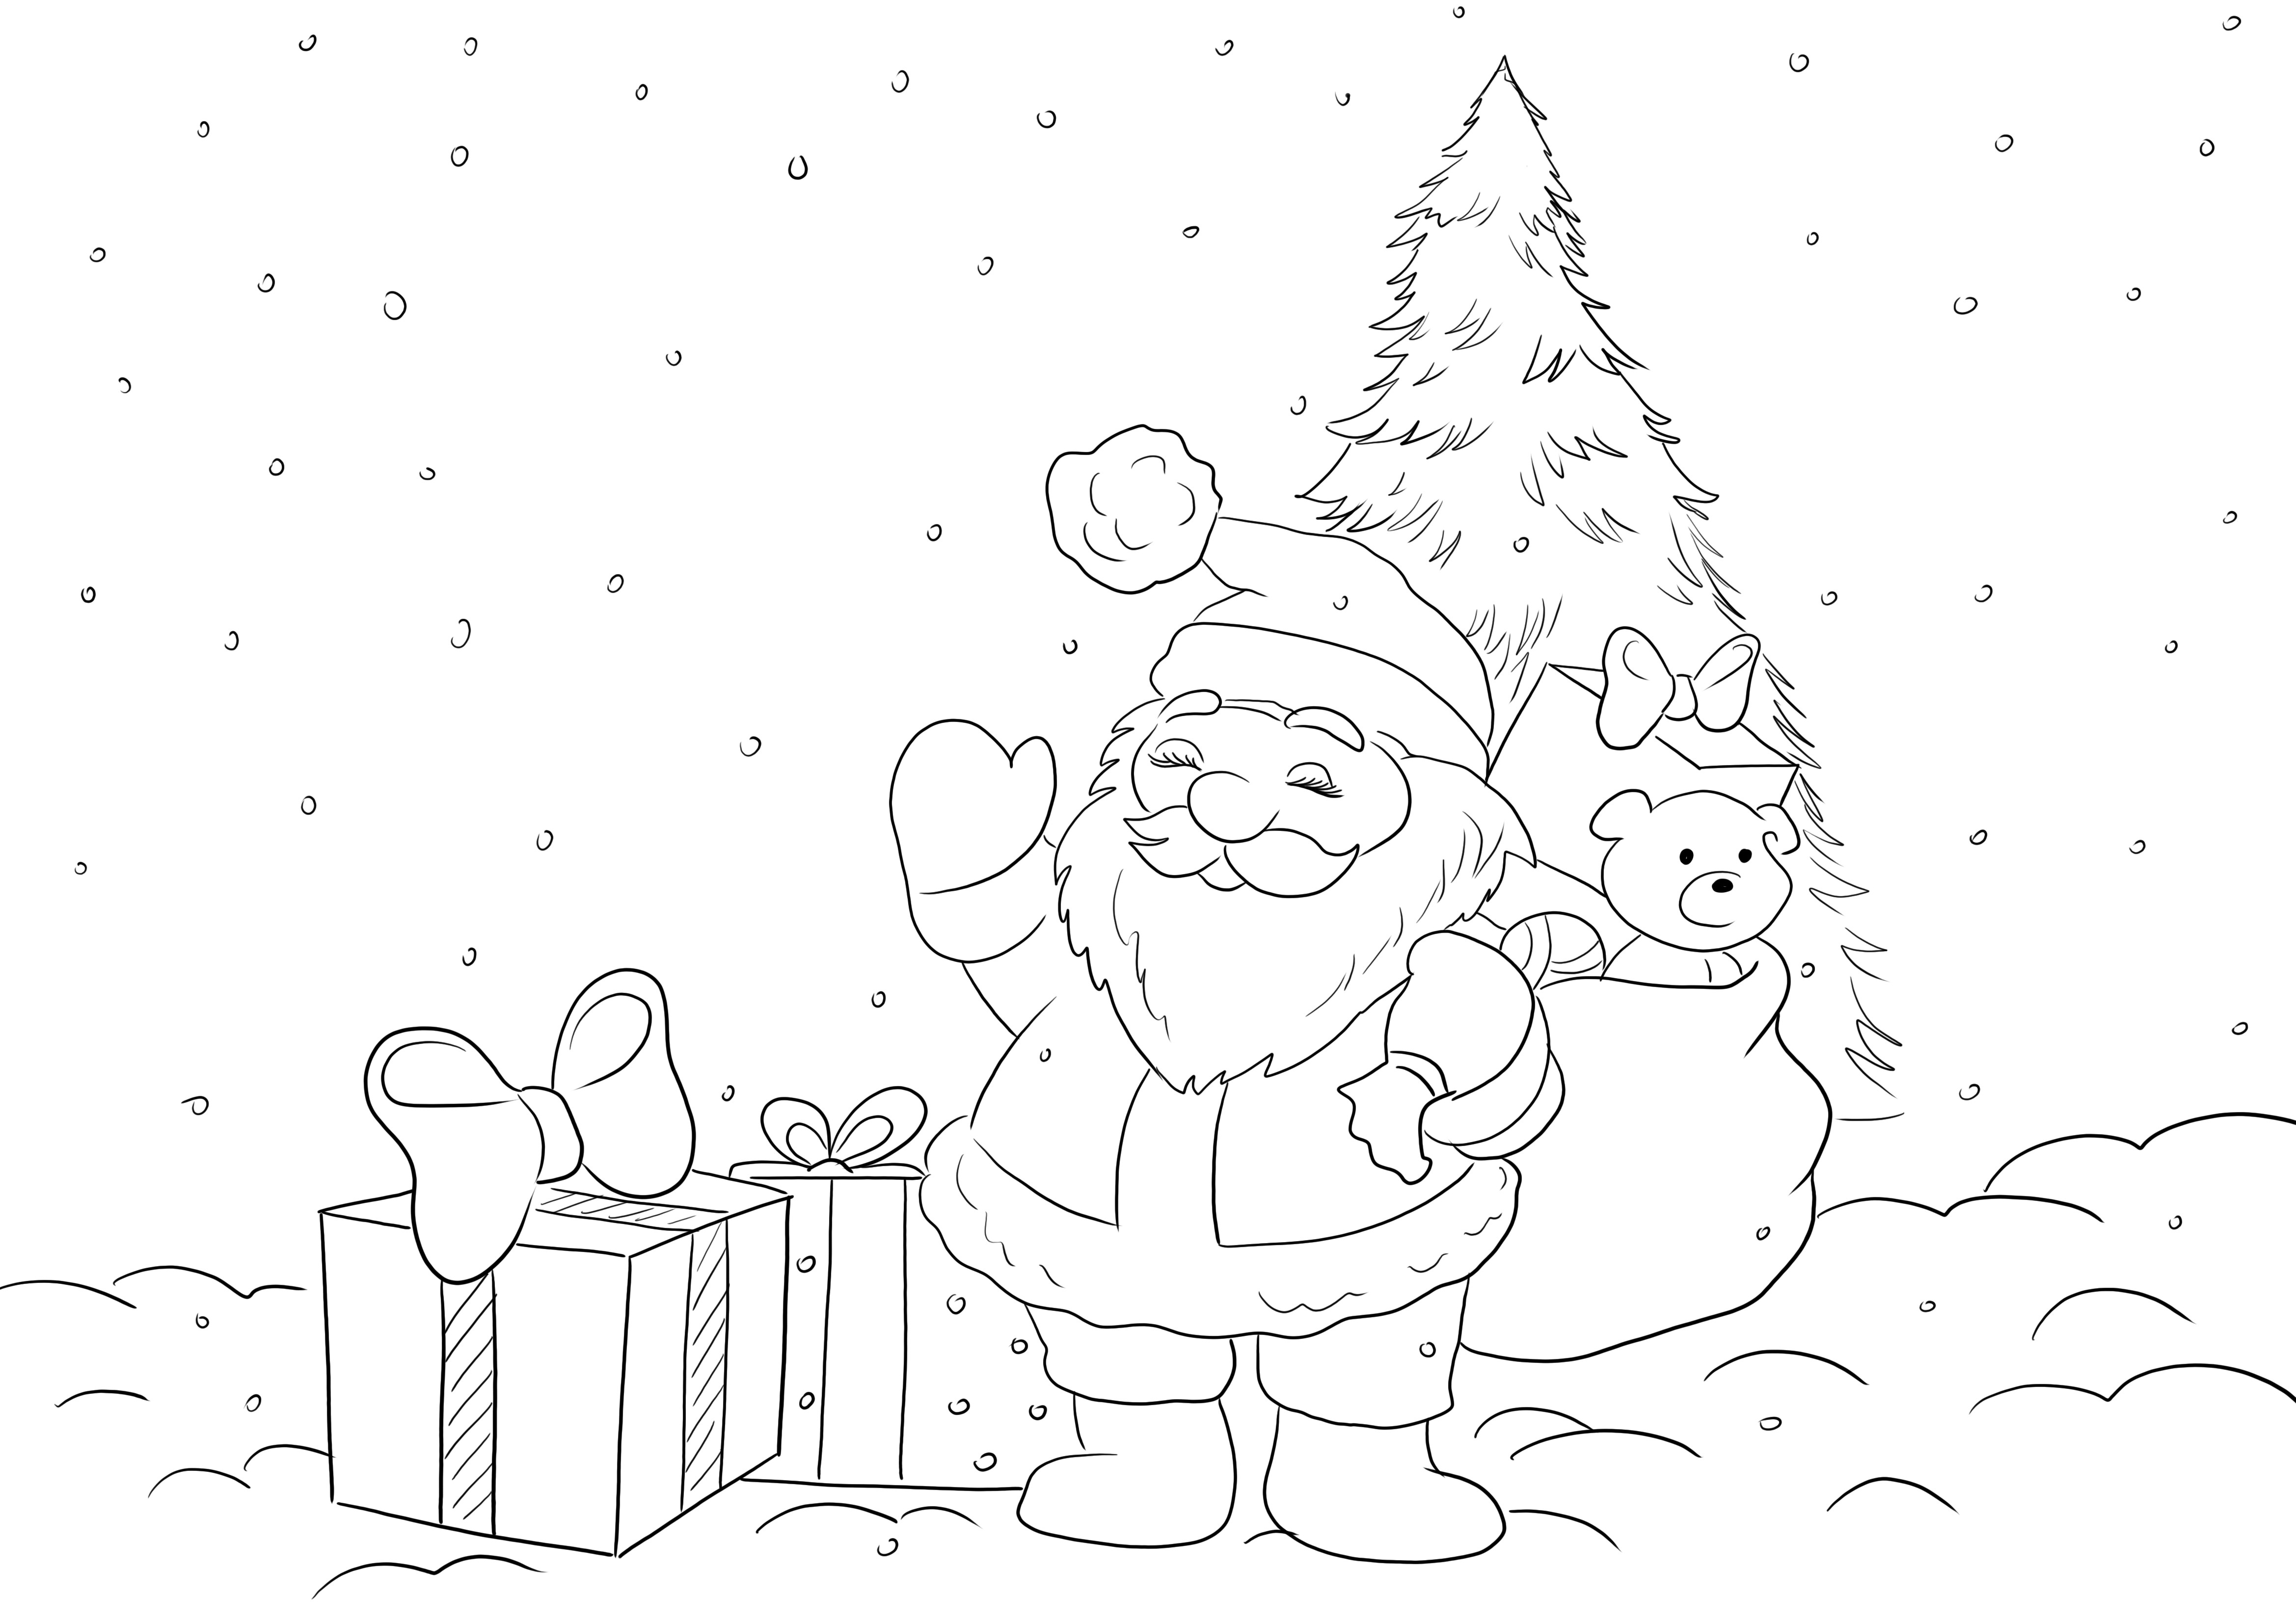 Gratis kleurplaat van de kerstman met cadeautjes die wachten tot alle kinderen met plezier kunnen kleuren kleurplaat